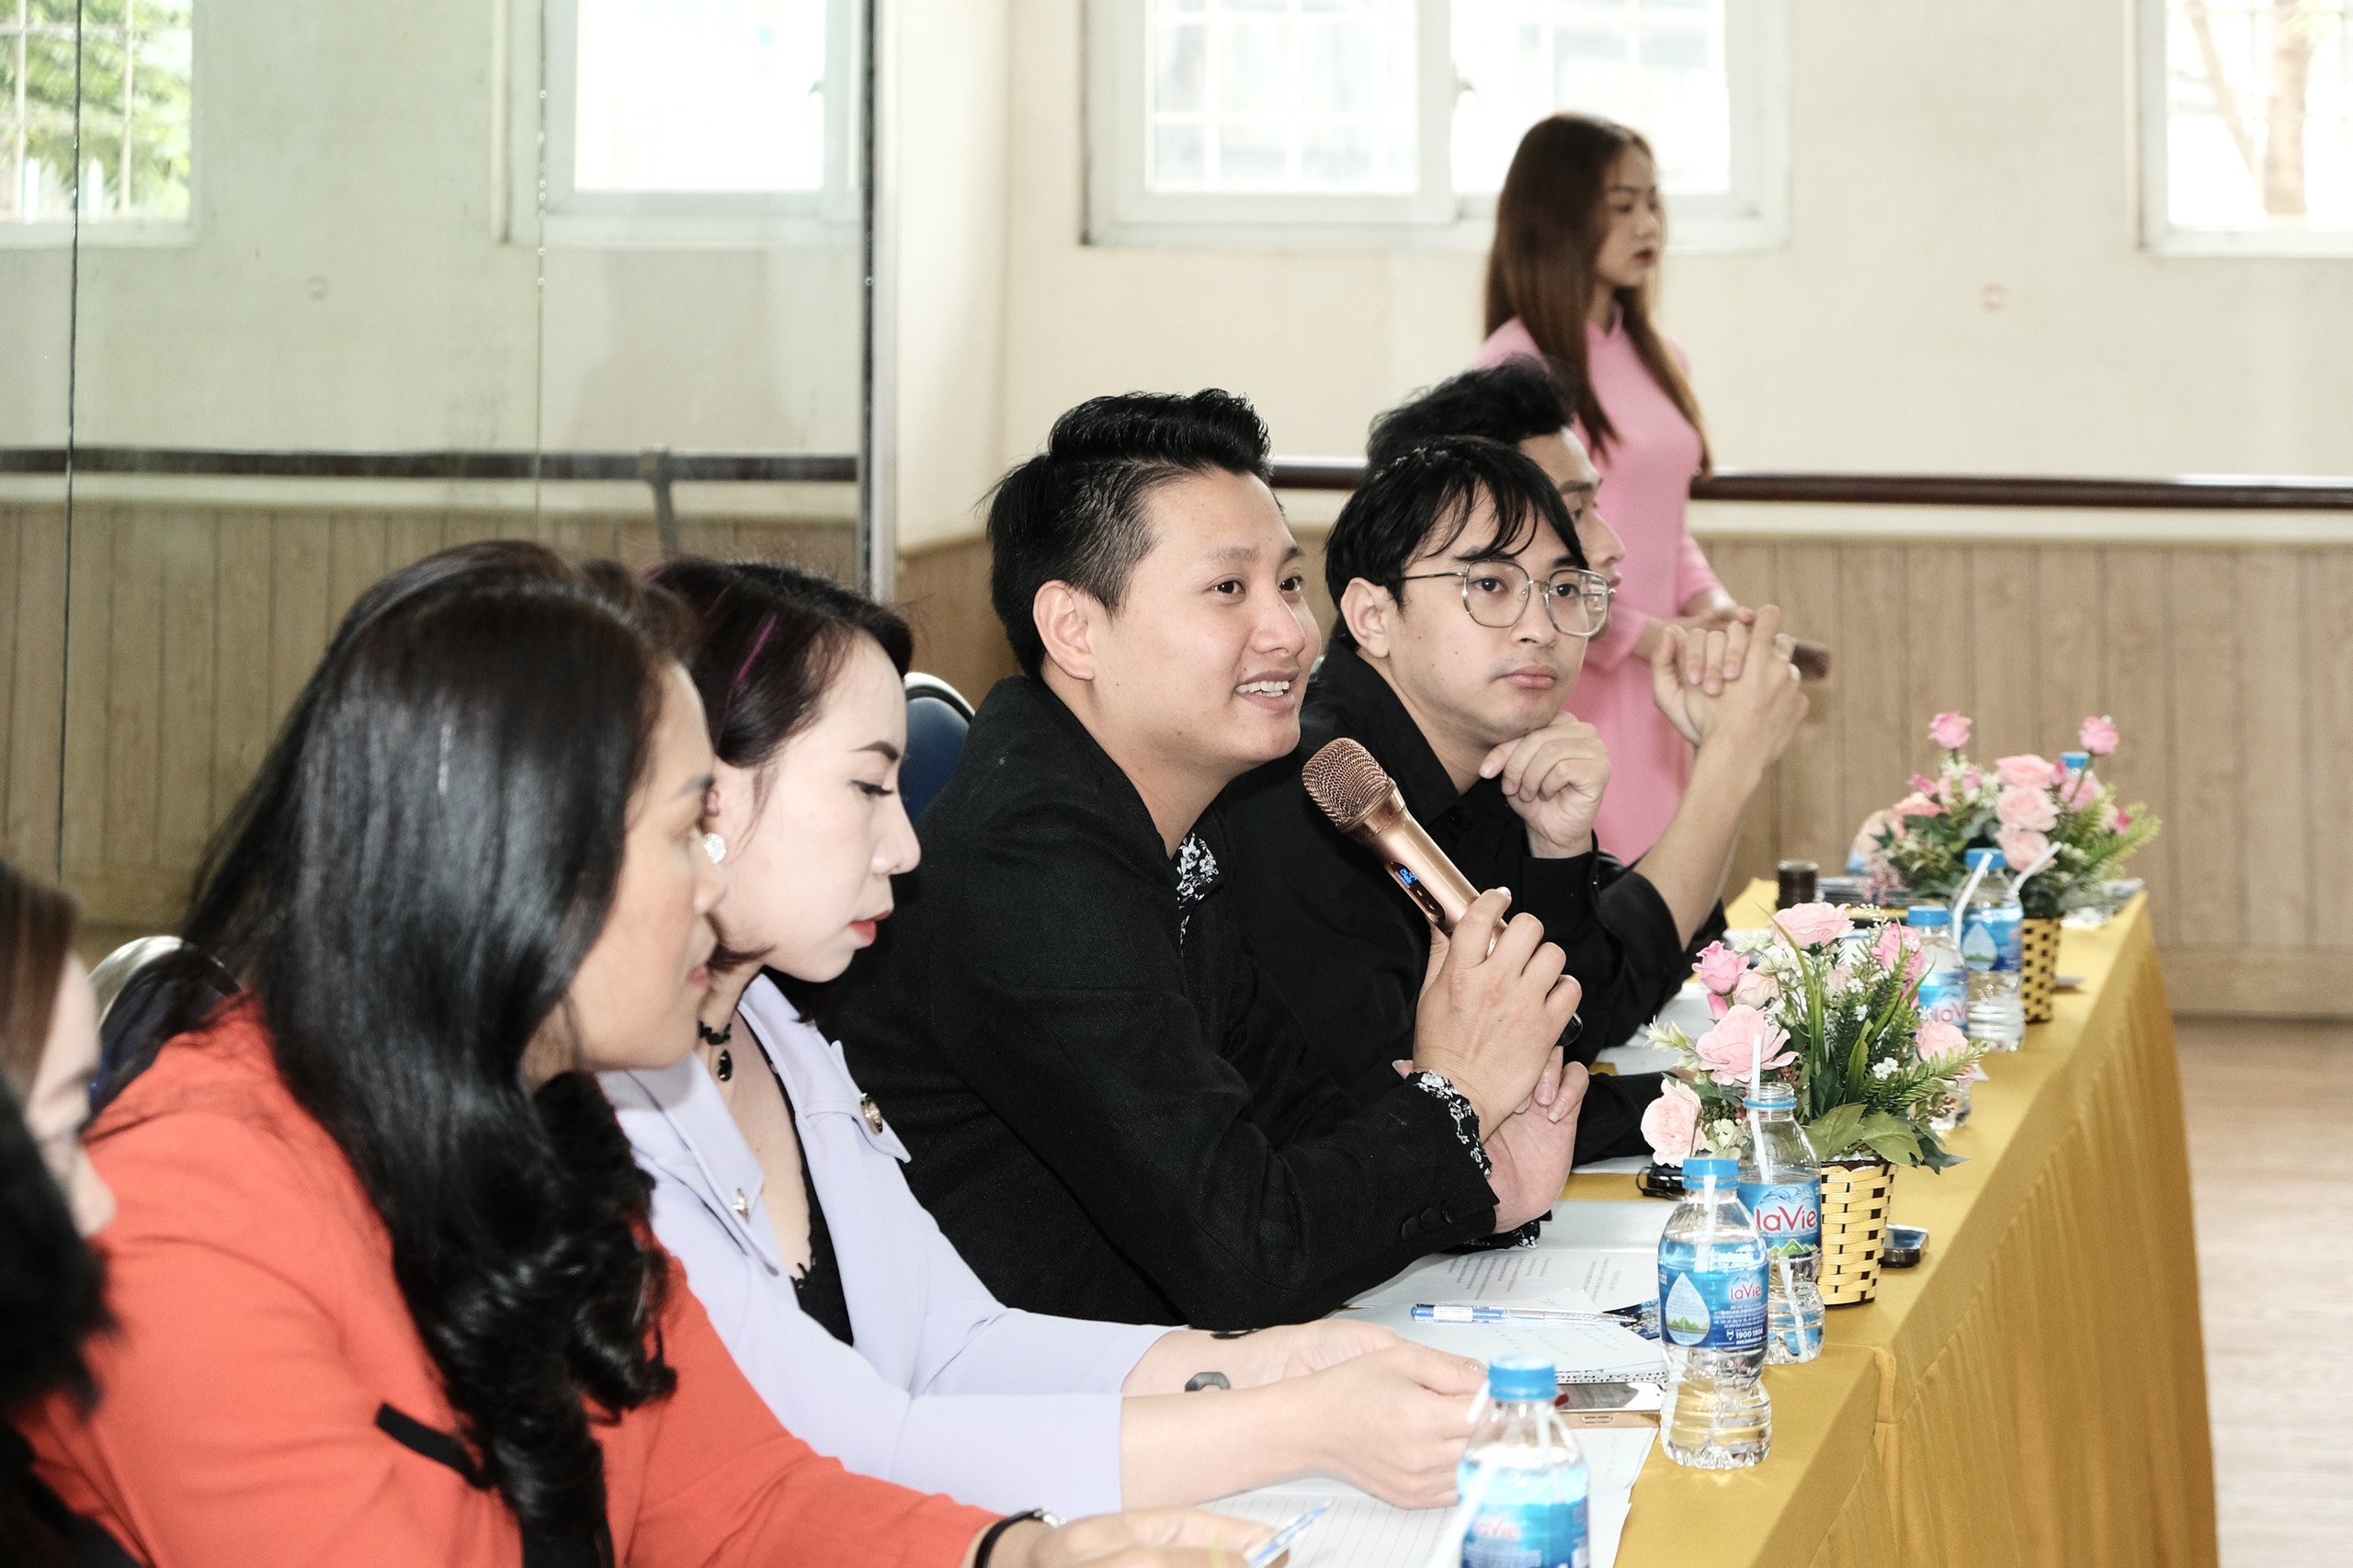  Vietnam Young Art tổ chức thành công “ Tọa đàm đẩy mạnh phát triển, tổ chức các phong trào nghệ thuật dành cho thanh, thiếu niên, nhi đồng năm 2023”.